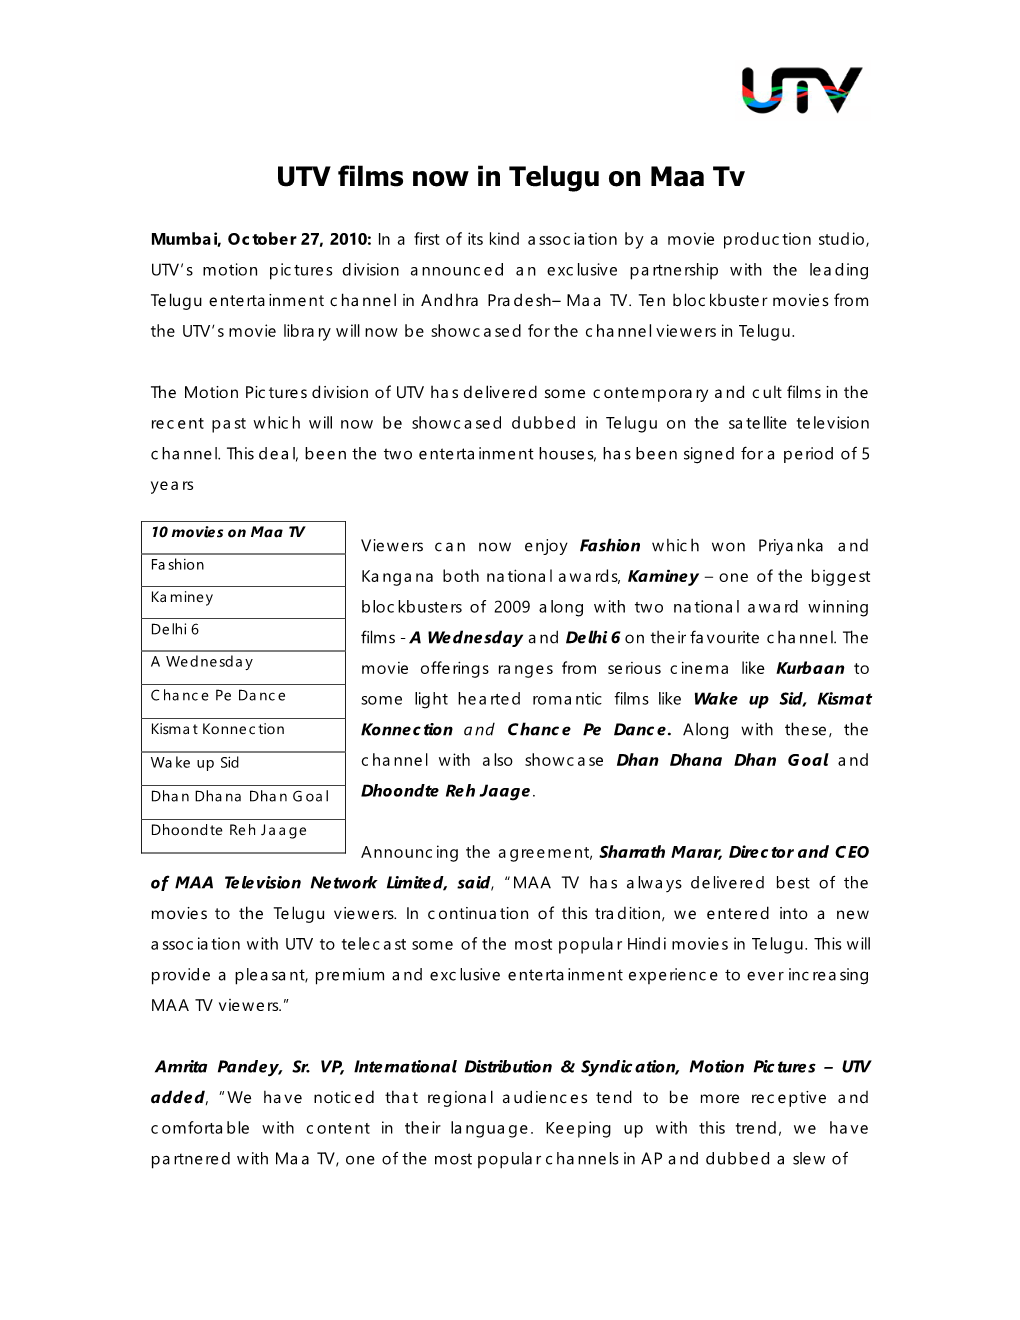 UTV Films Now in Telugu on Maa Tv